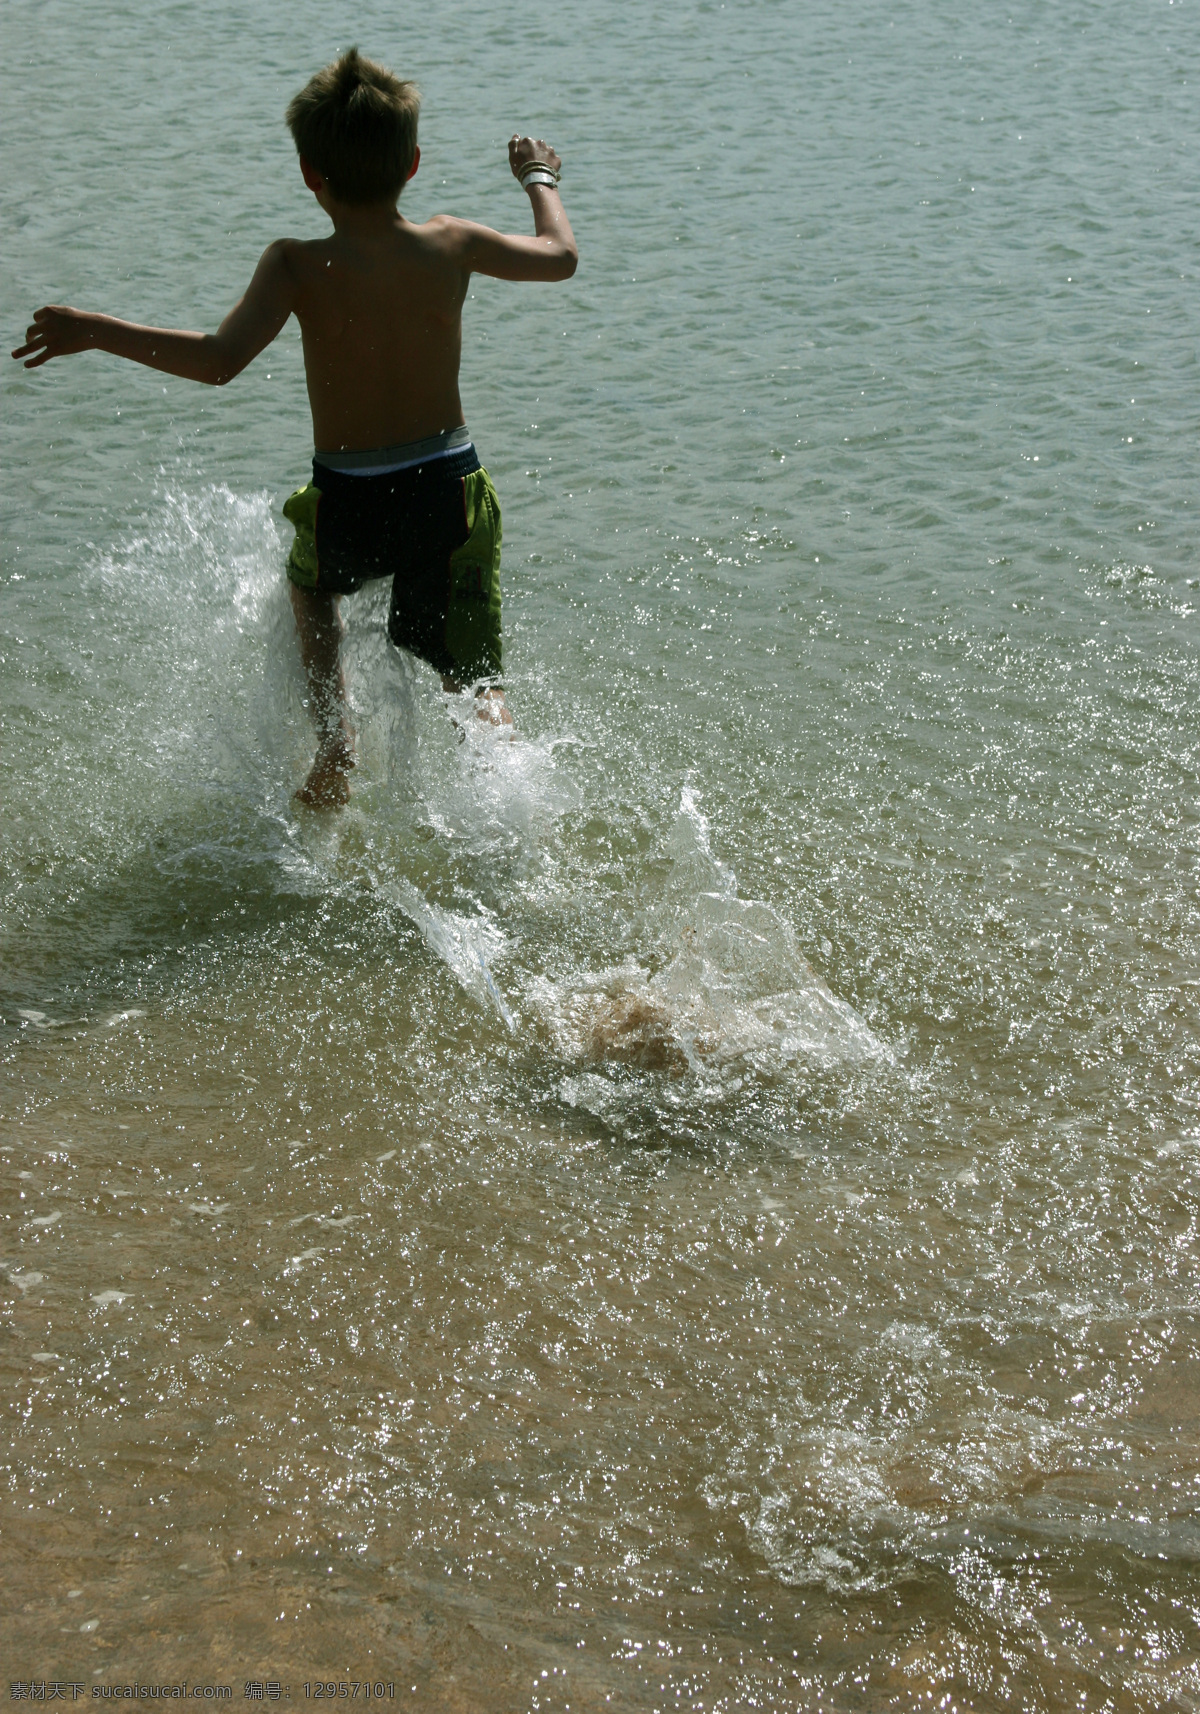 大海 儿童 海滩 海洋 男孩 人物图库 日常生活 沙滩 戏水 儿童戏水 小孩 嬉戏 游泳 人物相关素材